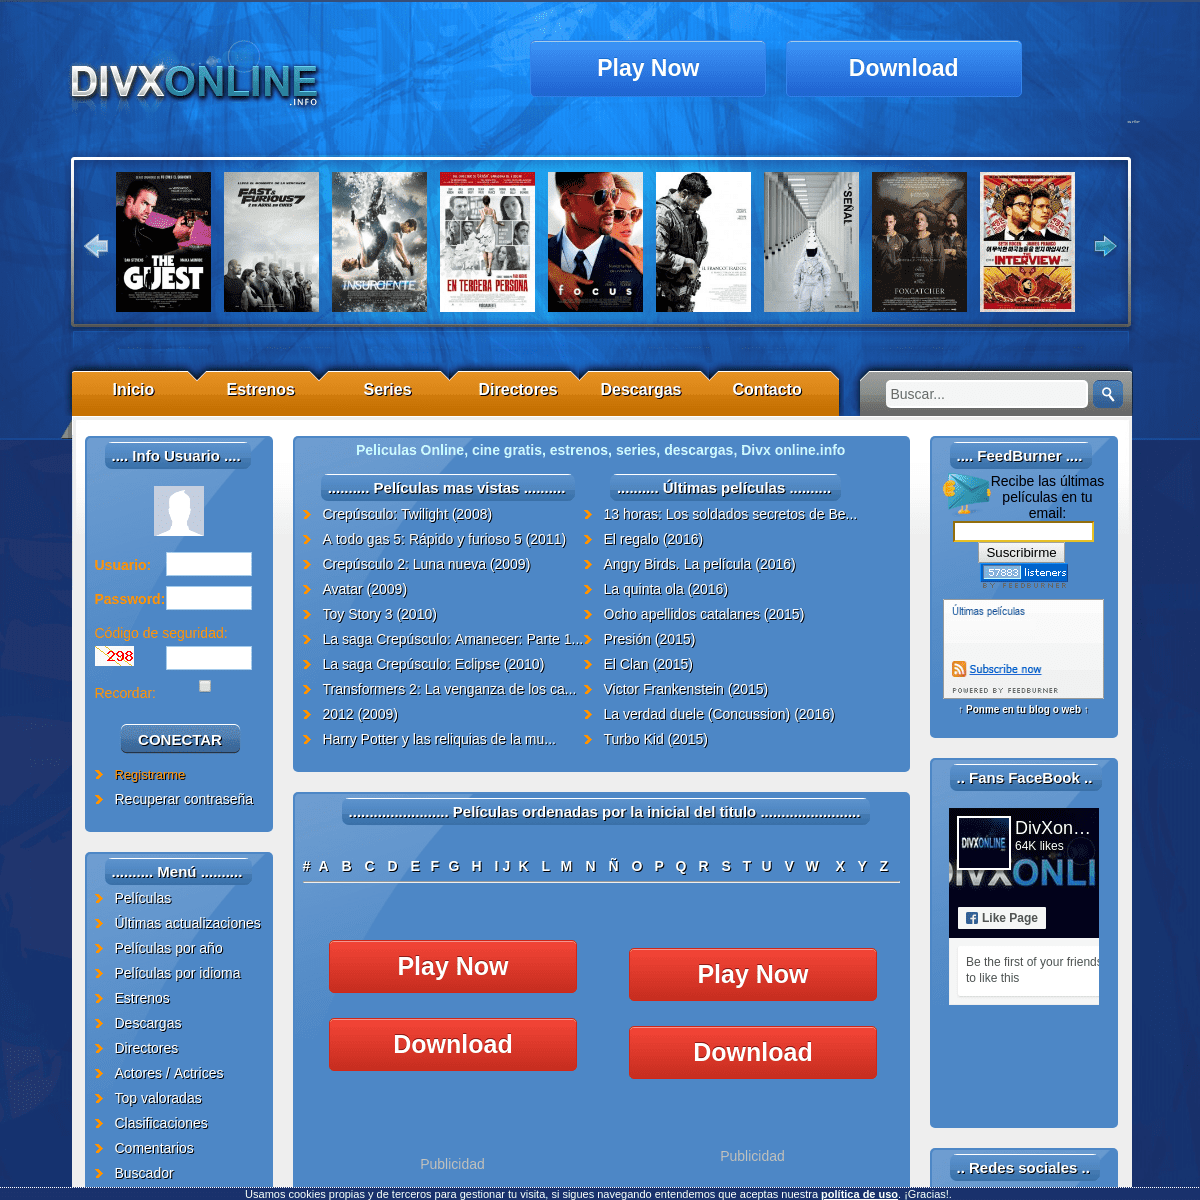 A complete backup of divxonline.tv